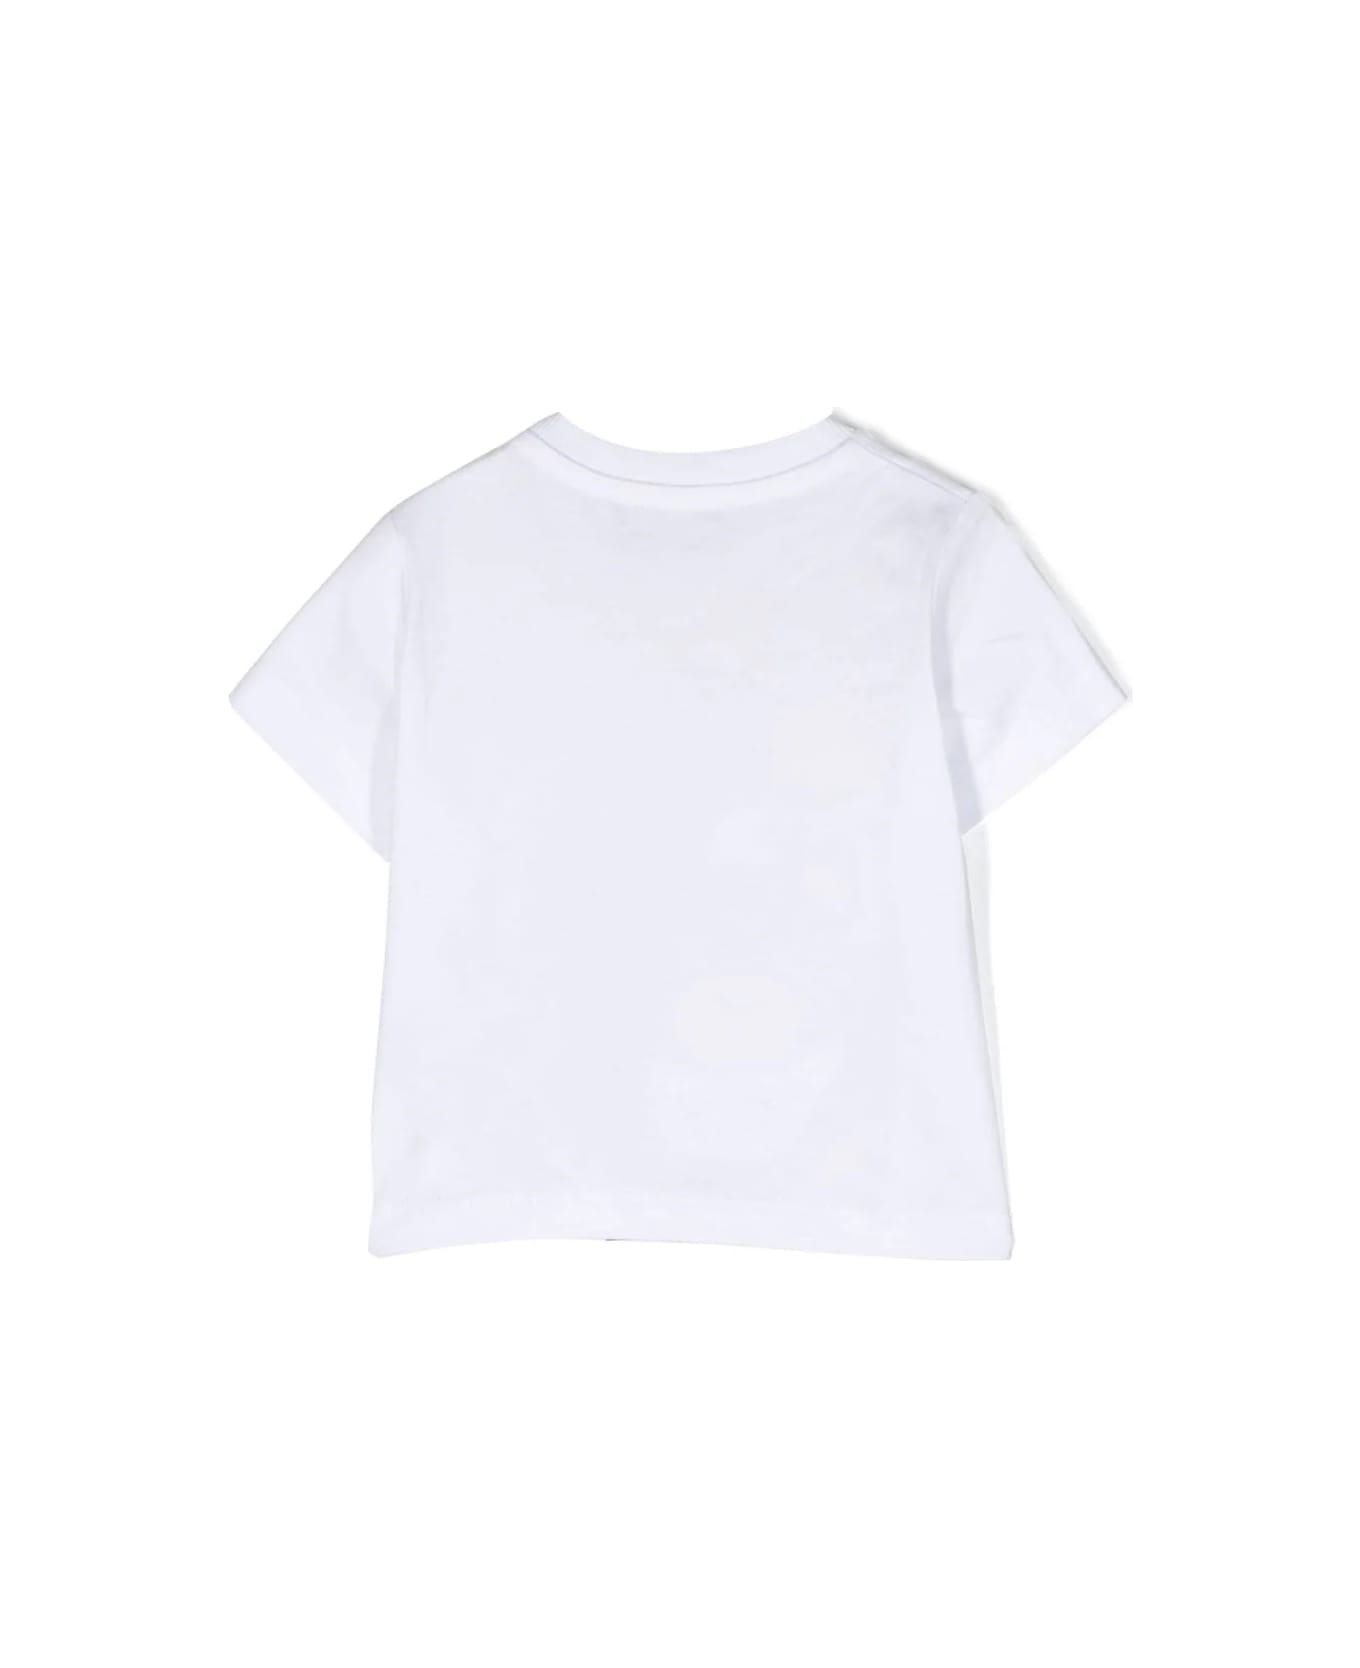 Moschino Printed T-shirt - Bianco